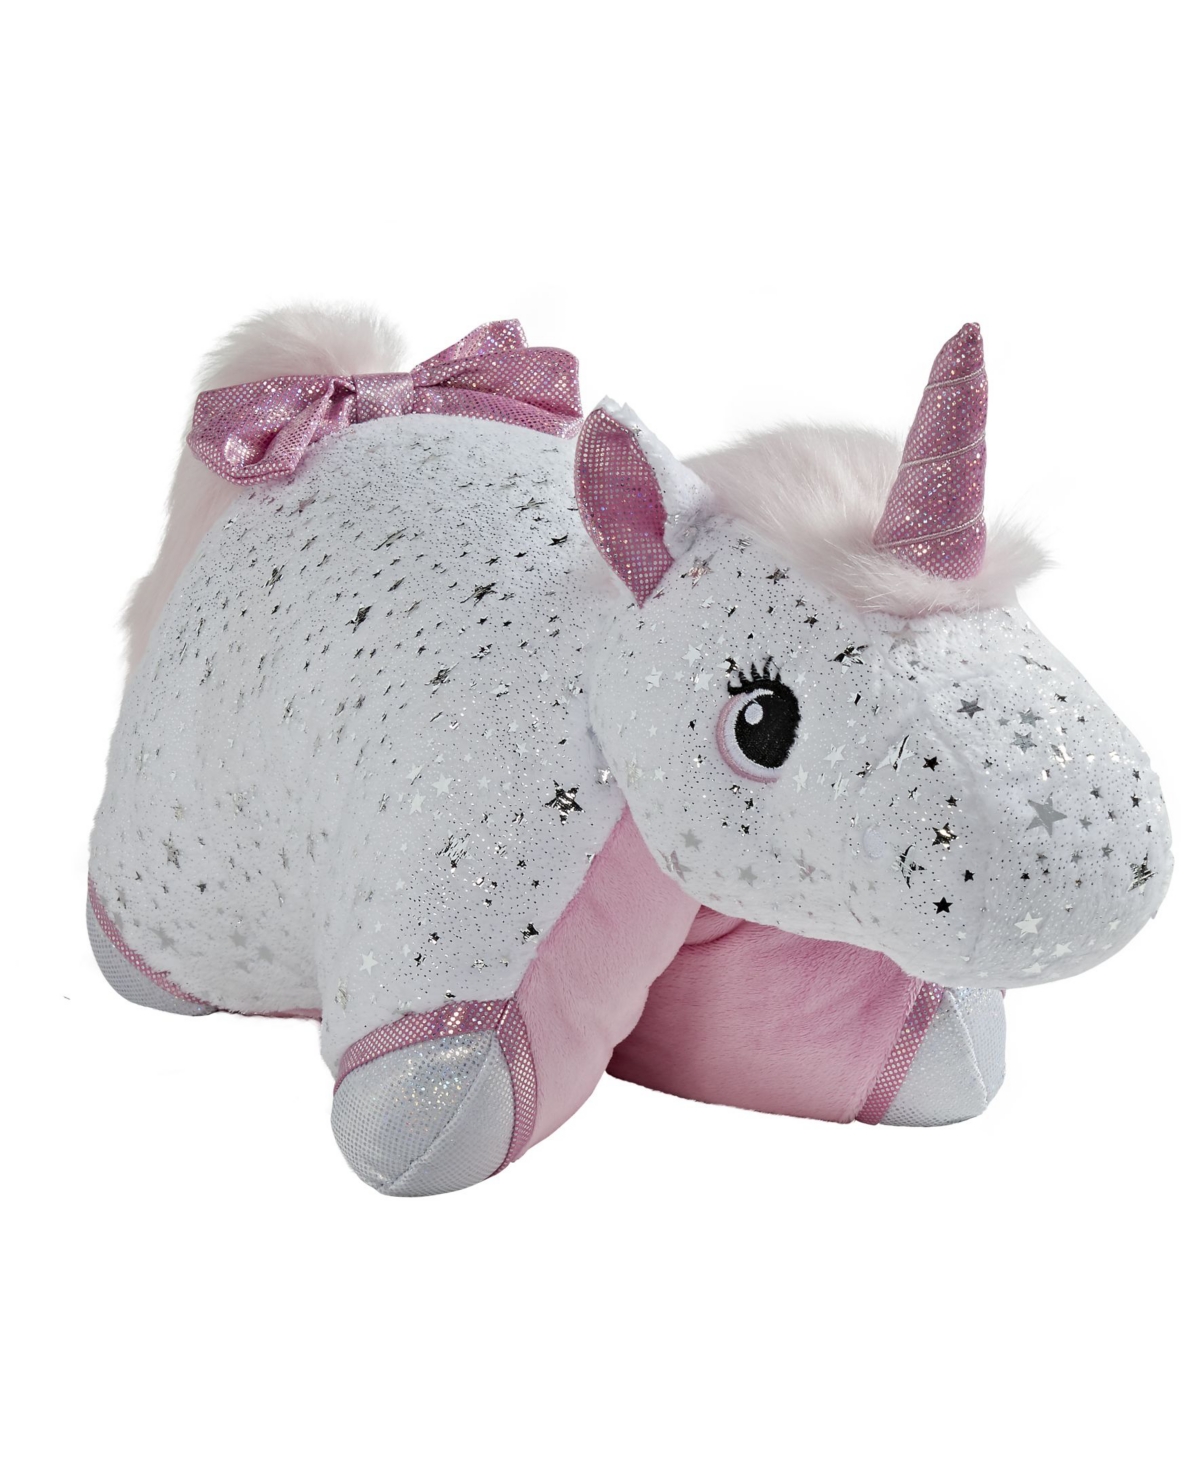 Pillow Pets Kids' Signature Glittery Unicorn Stuffed Animal Plush Toy In White